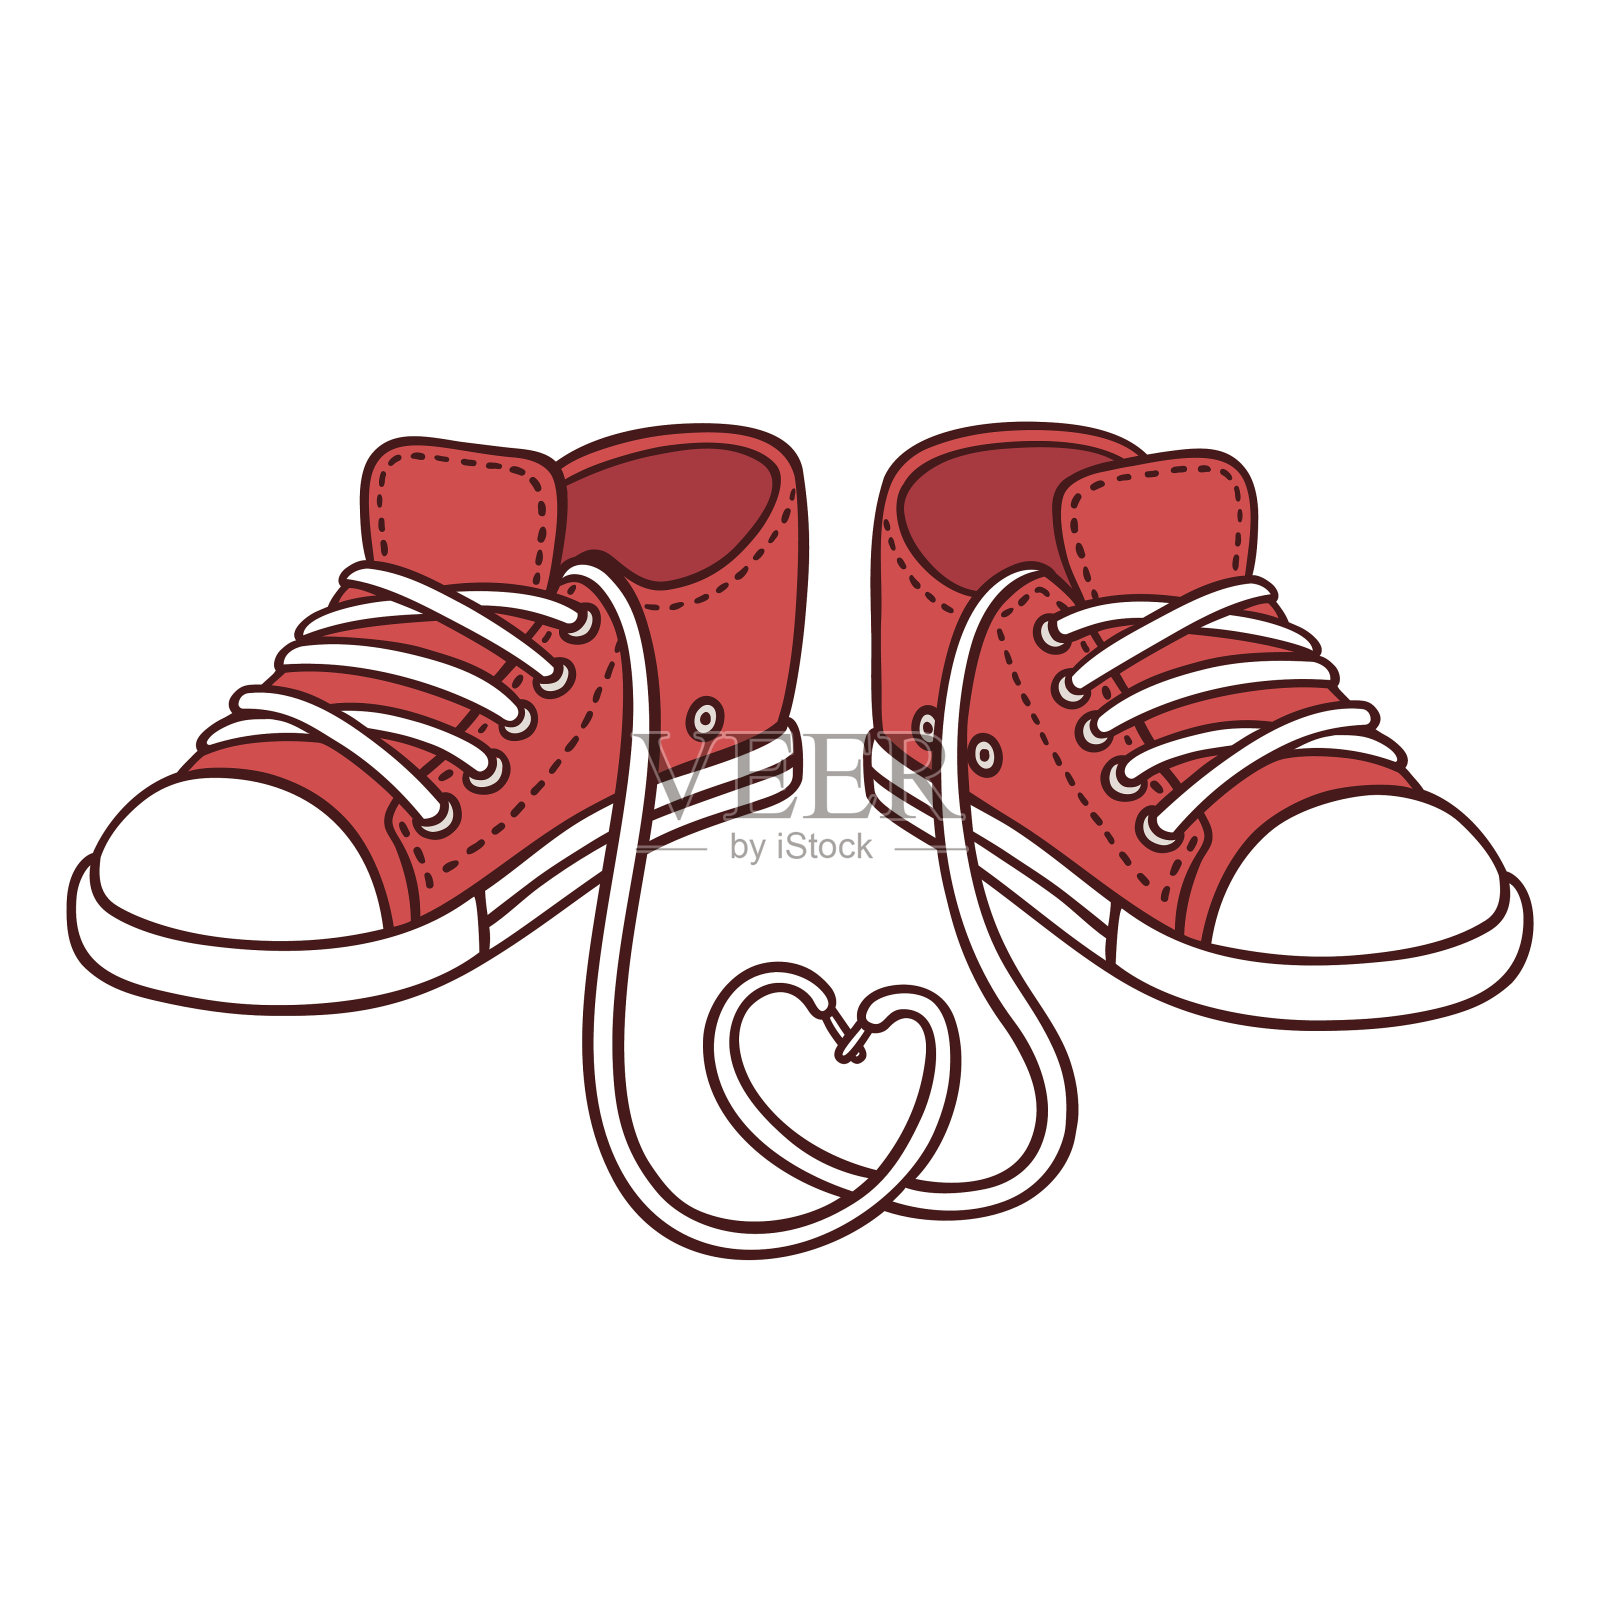 一双红色运动鞋插画图片素材